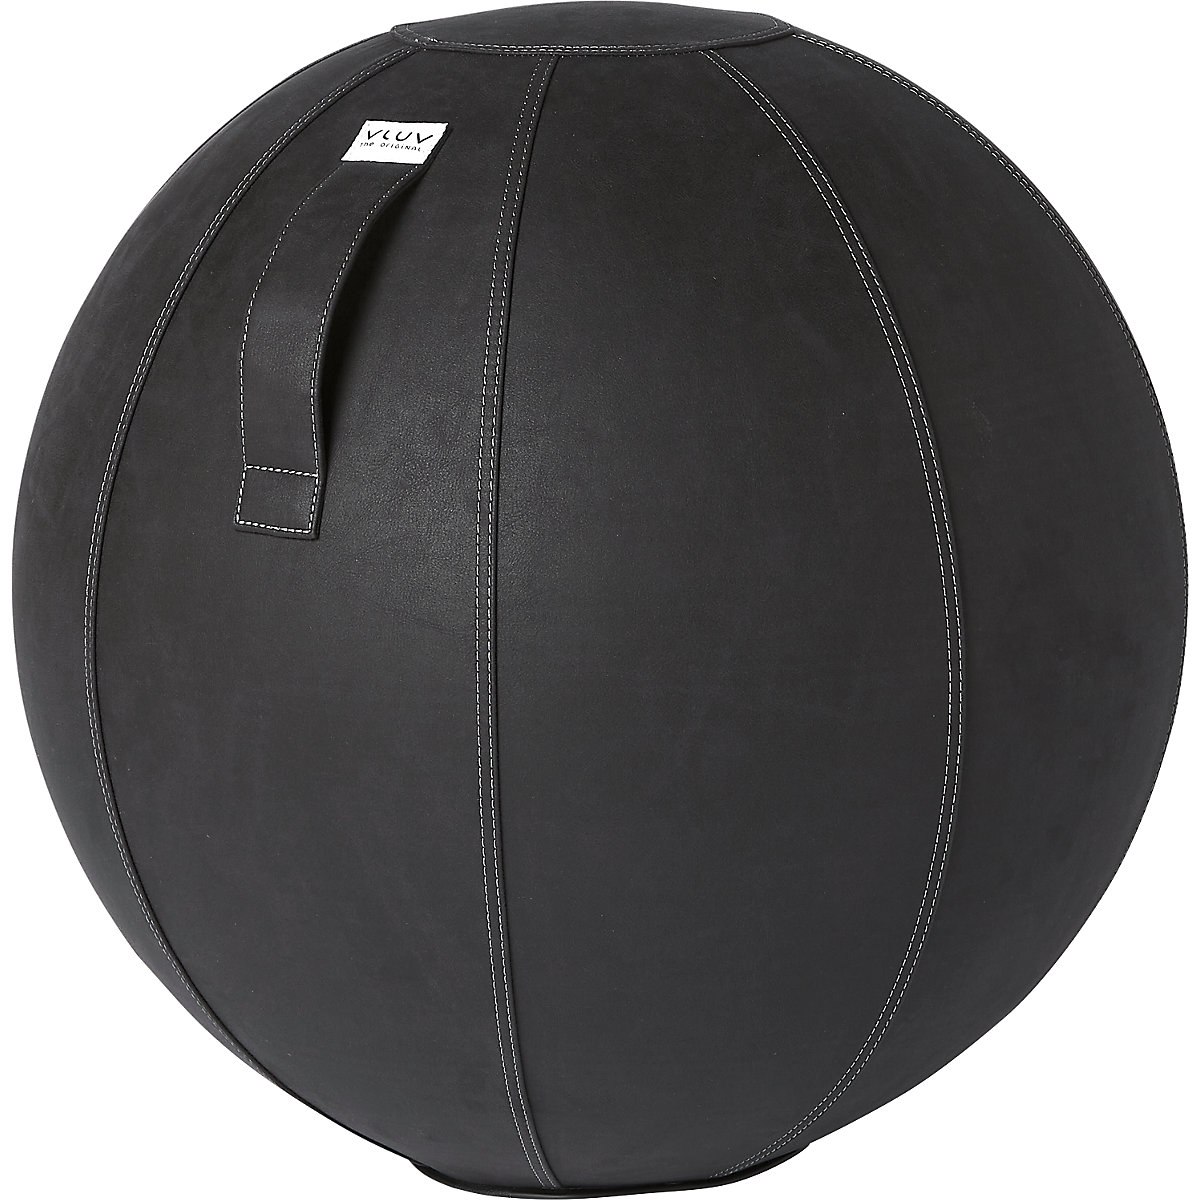 VEGA Swiss ball – VLUV, vegan vinyl, 600 – 650 mm, black-9